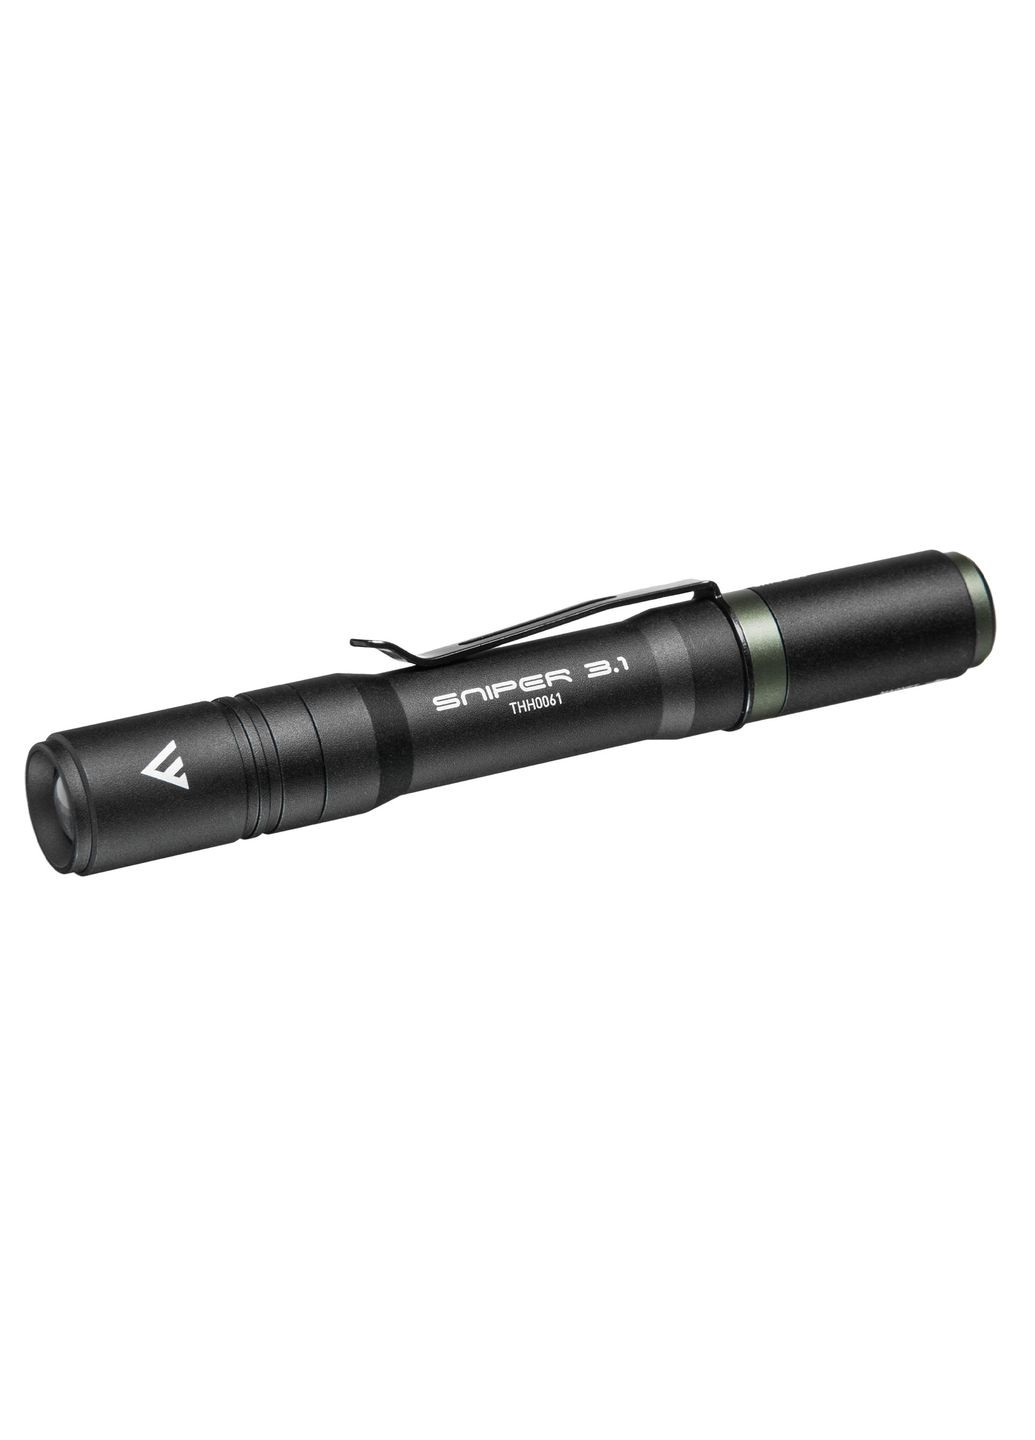 Фонарь тактический Sniper 3.1 (130 Lm) USB Rechargeable Magnetic Mactronic (278001654)